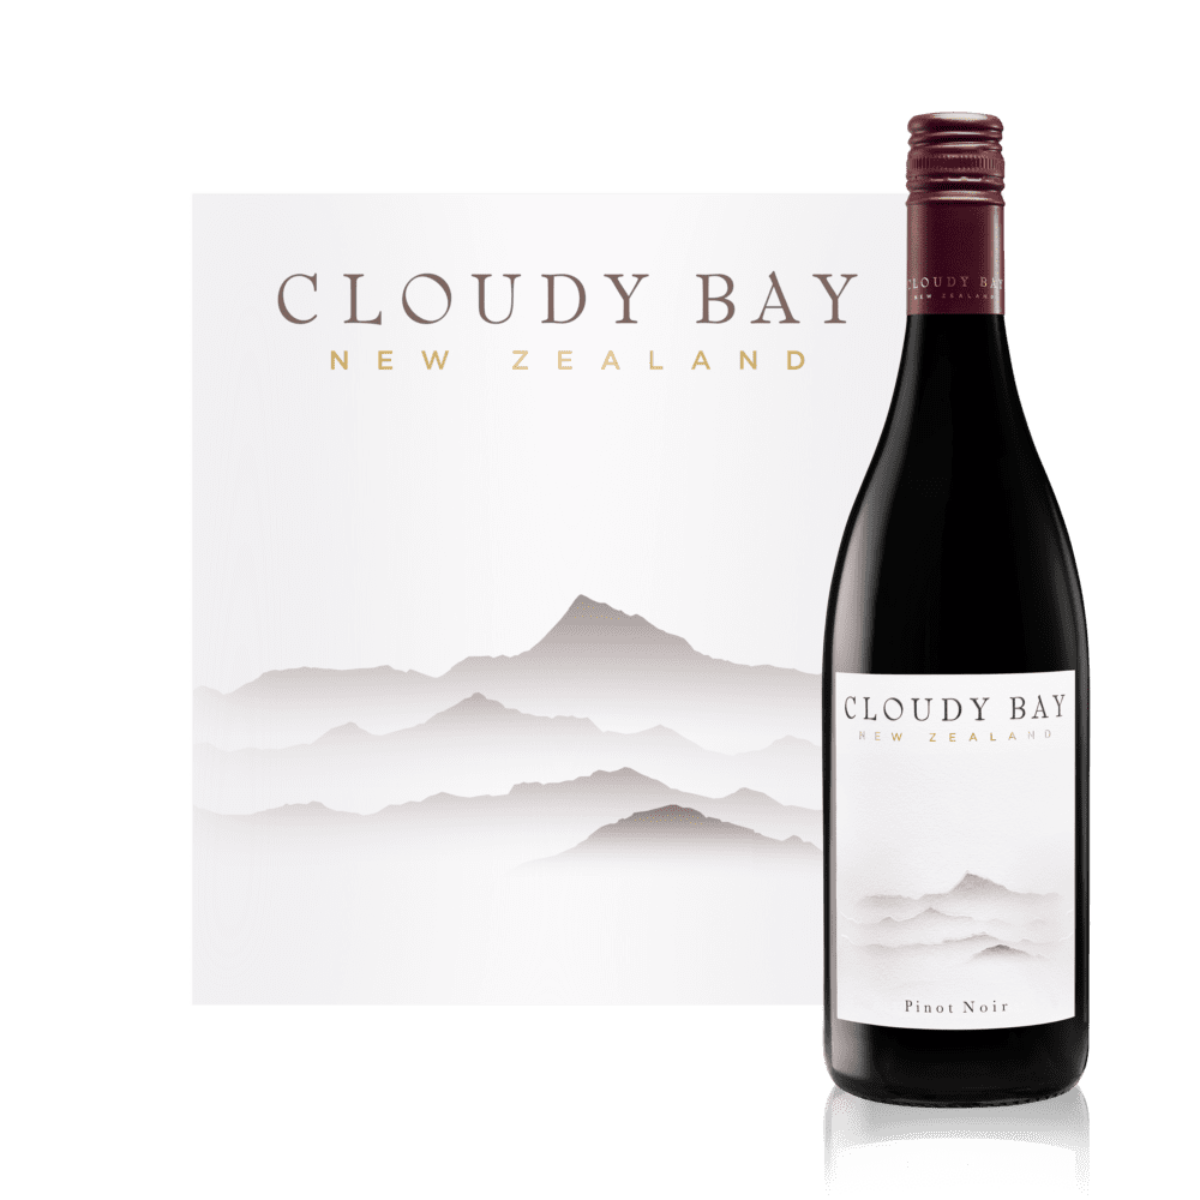 Order Cloudy Bay Pinot Noir